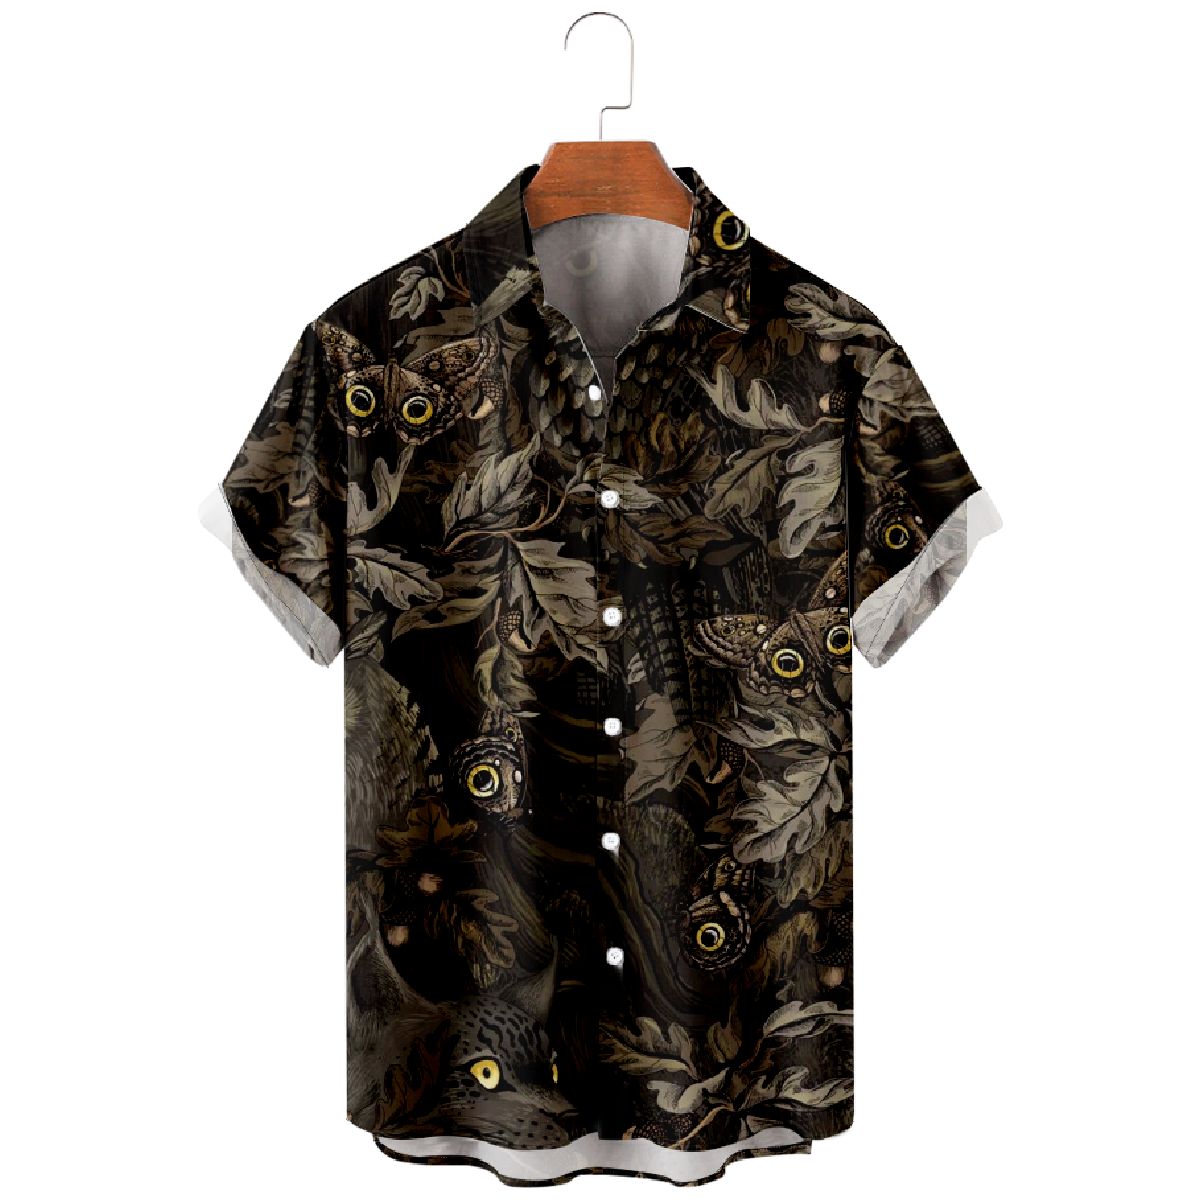 Owl Button Up Shirt Men's Black Hawaiian Shirt Short Sleeve 